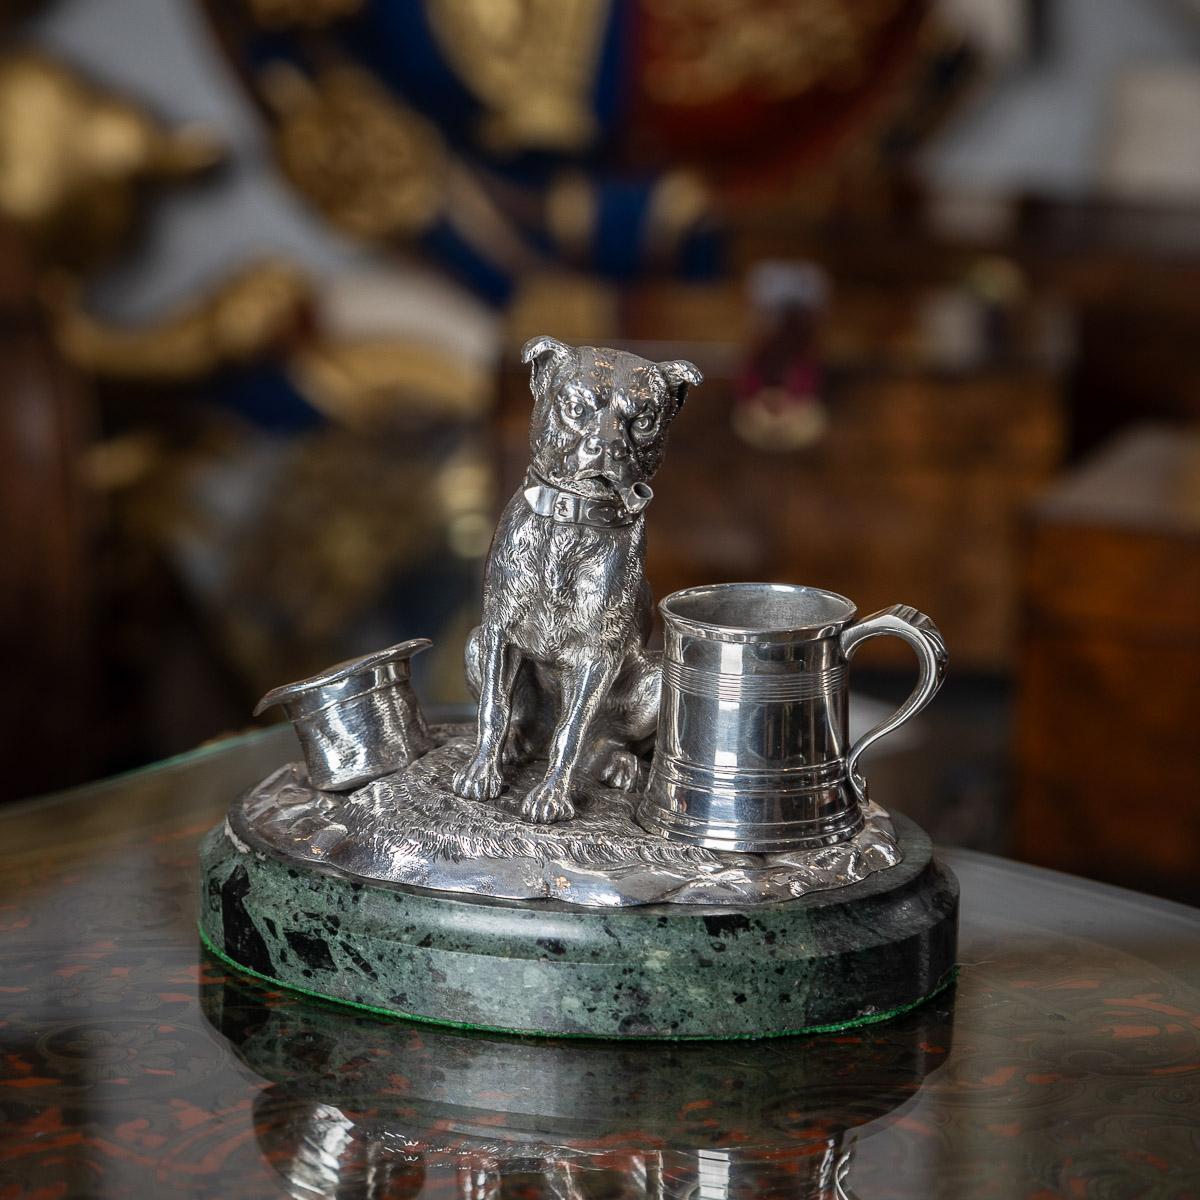 Antiguo compendio victoriano del siglo XIX de plata maciza para fumadores, con forma de perro sentado que se deleita con una pipa, con cabezal extraíble. El encantador diseño se complementa con una jarra cónica en miniatura y un sombrero de copa,